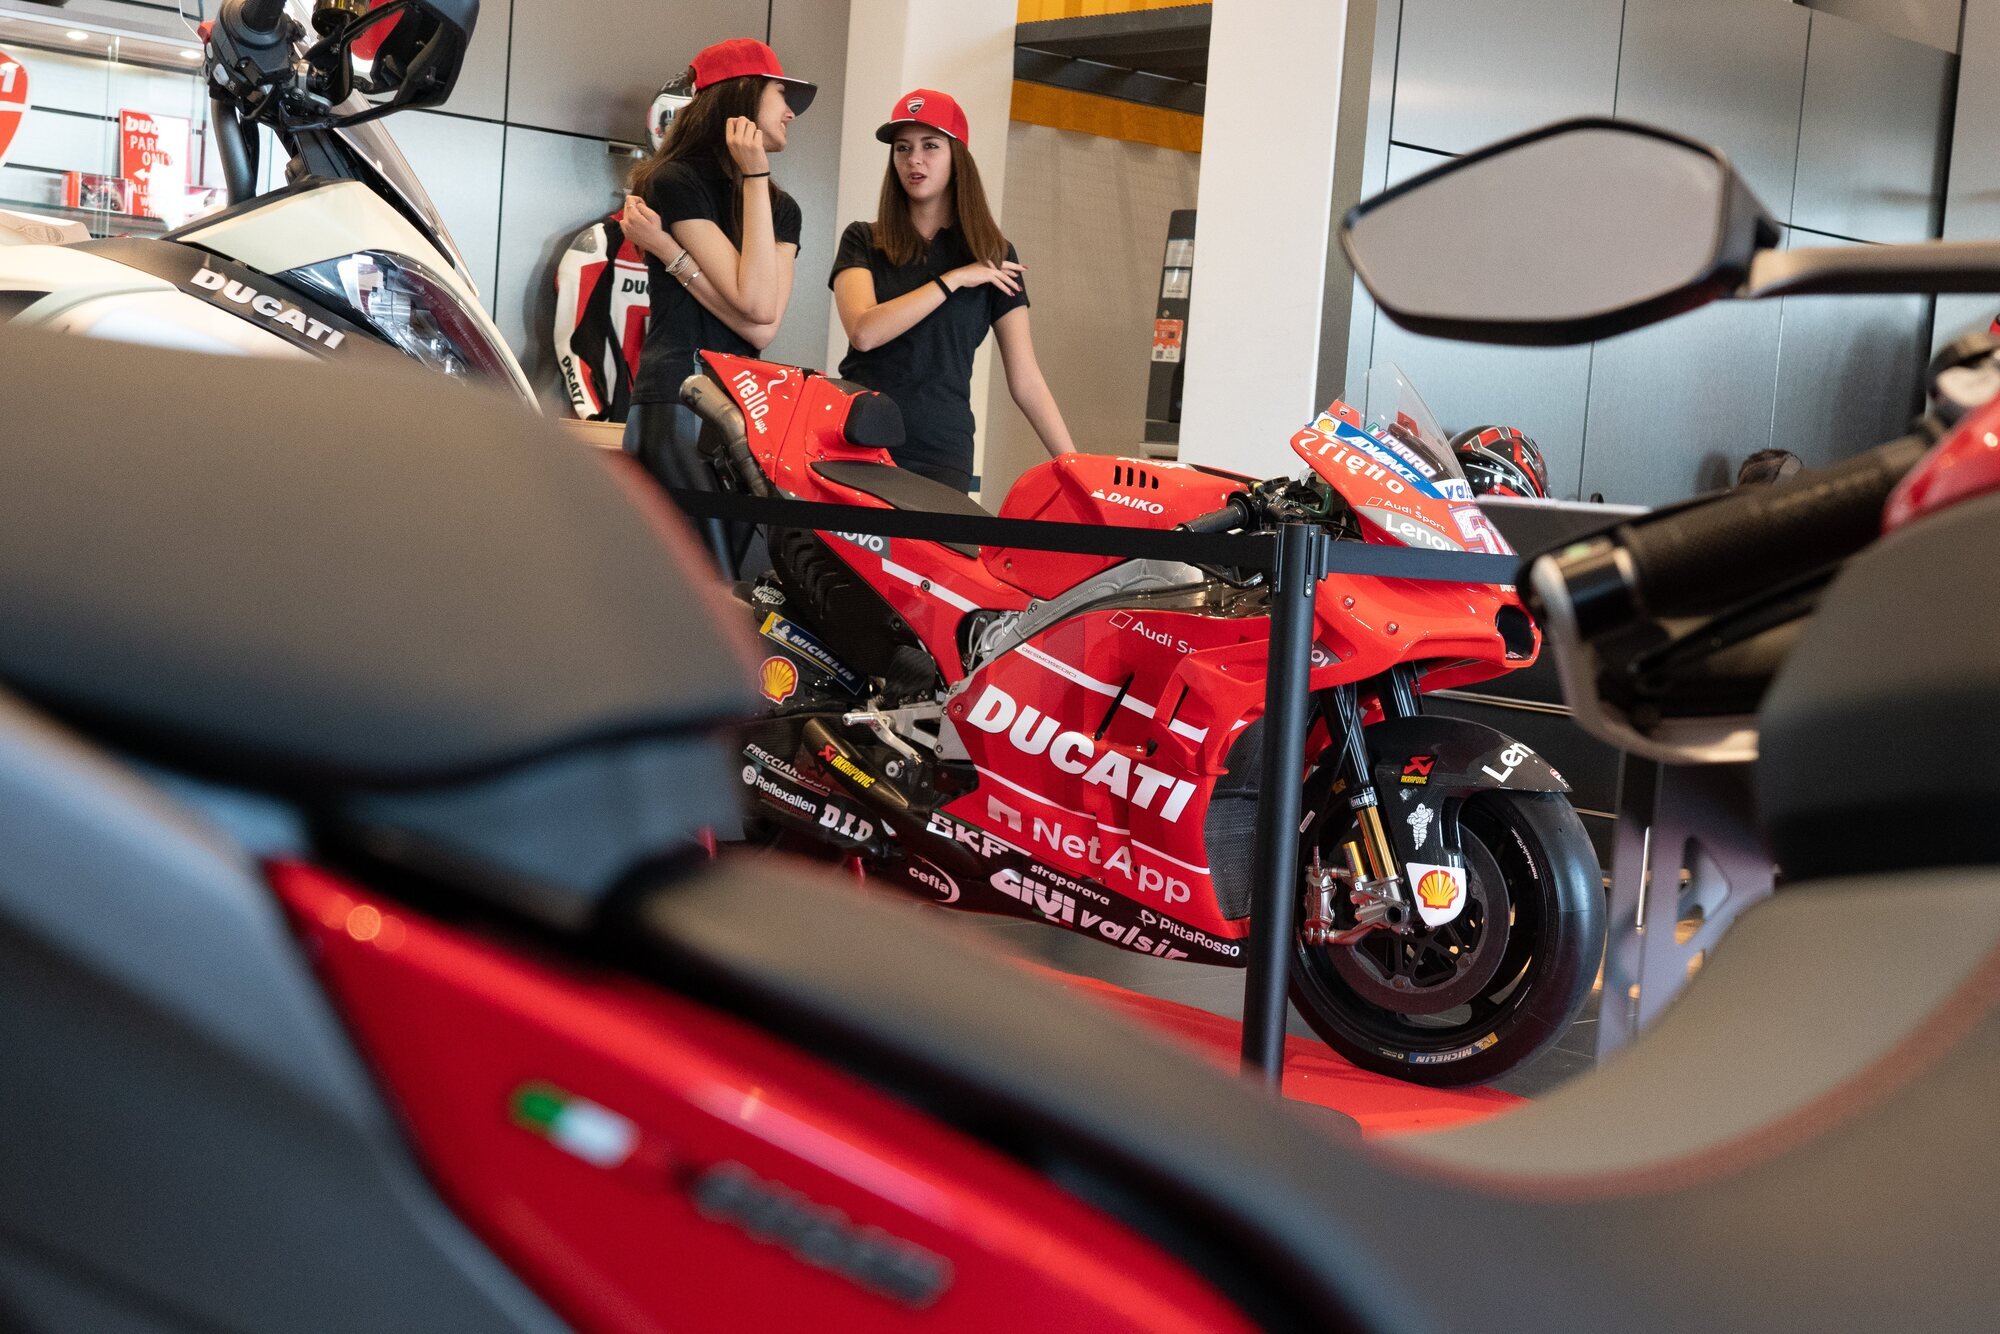 Ducati inaugura un nuovo Store a Catania